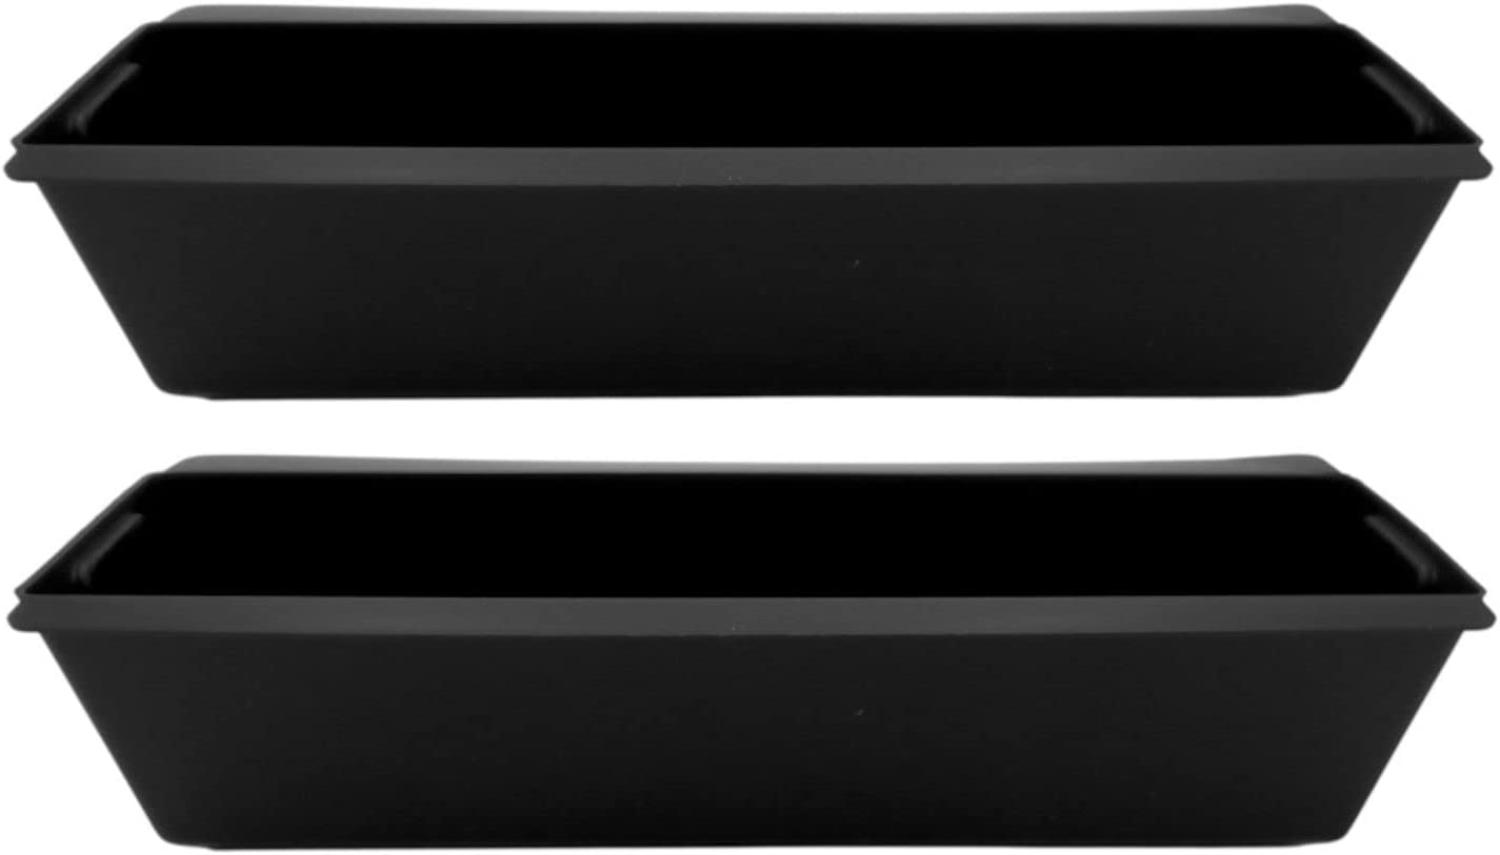 BURI Pflanzkasten für Europaletten 1-6 Stück verzinkt schwarz Balkon Blumenkasten Kunststoff schwarz - 2 Stück Bild 1